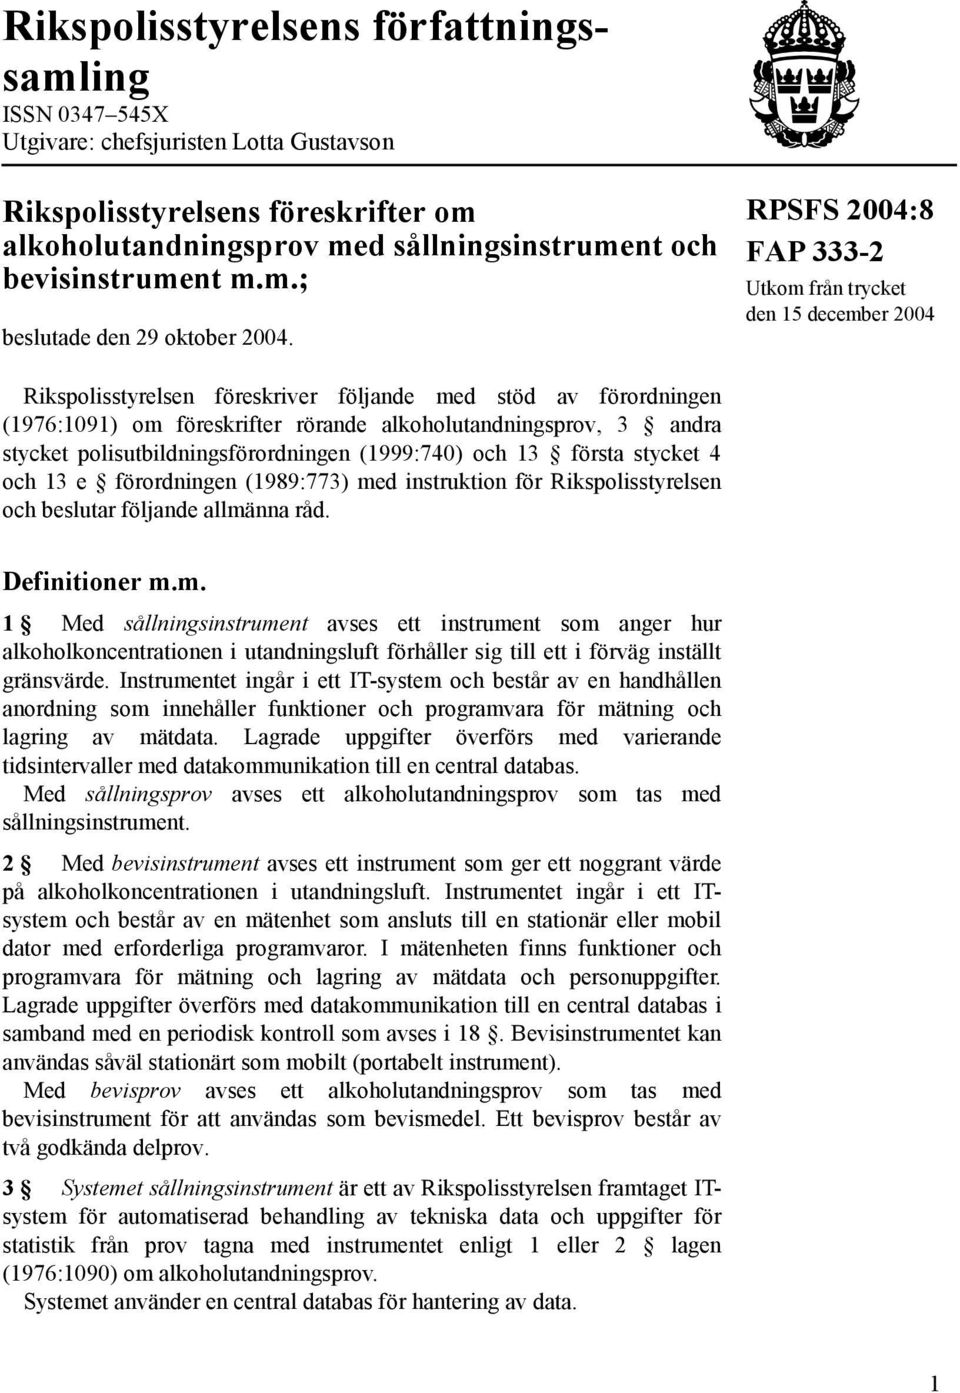 RPSFS 2004:8 FAP 333-2 Utkom från trycket den 15 december 2004 Rikspolisstyrelsen föreskriver följande med stöd av förordningen (1976:1091) om föreskrifter rörande alkoholutandningsprov, 3 andra